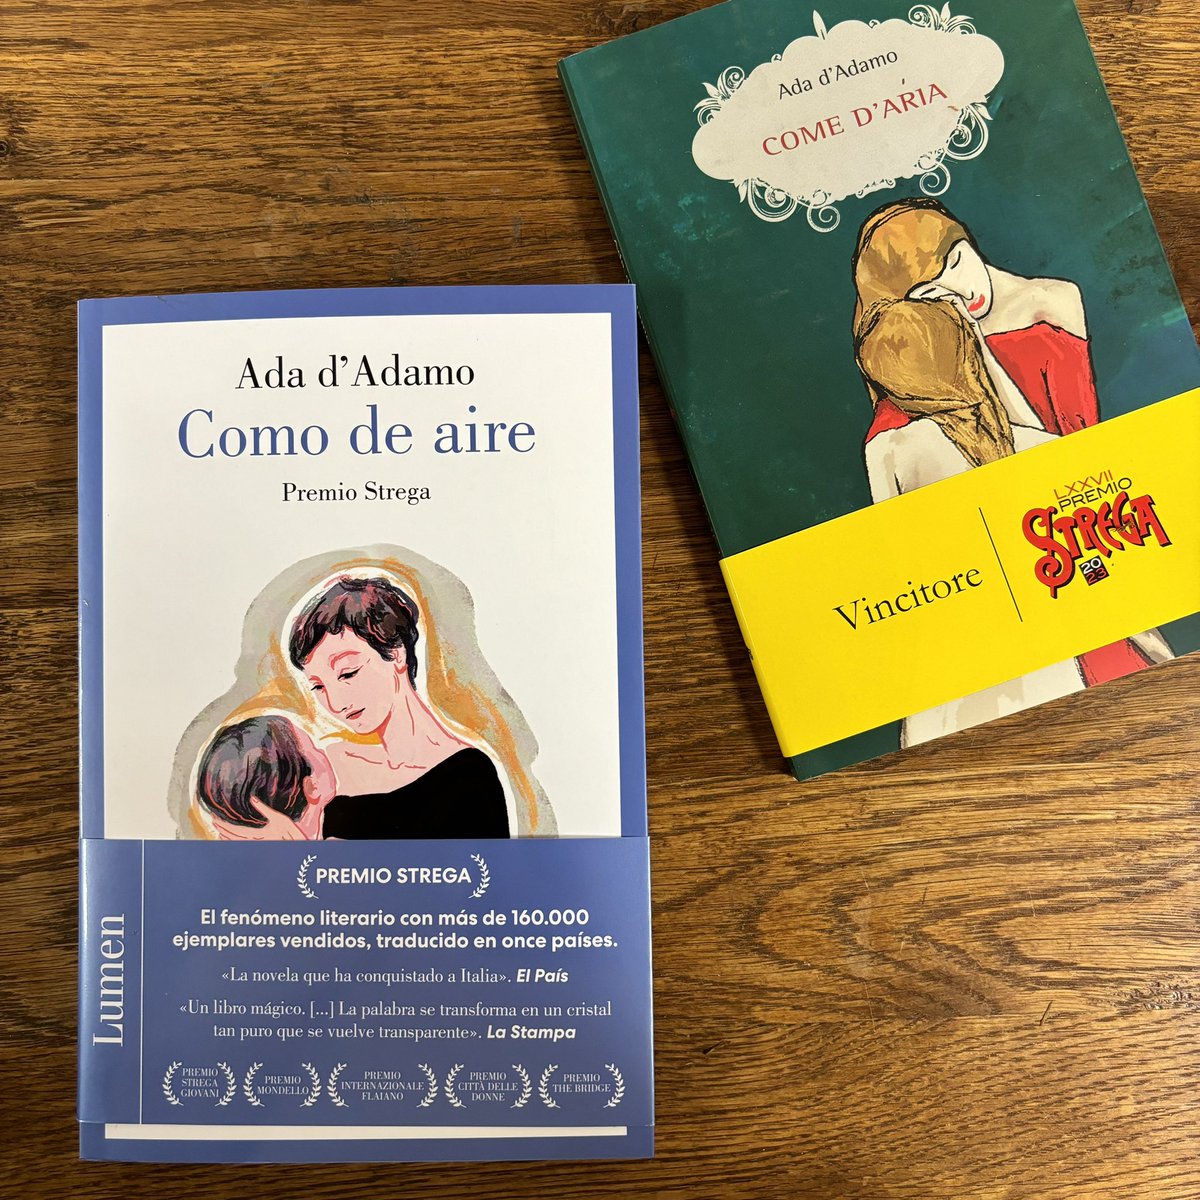 #Comedaria” di #AdadAdamo arriva in Spagna, edito da @LumenEdit con la traduzione di Celia Filipetto ❤️ In libreria dal 15 febbraio, anche in formato ebook e audiolibro 📚🇪🇸